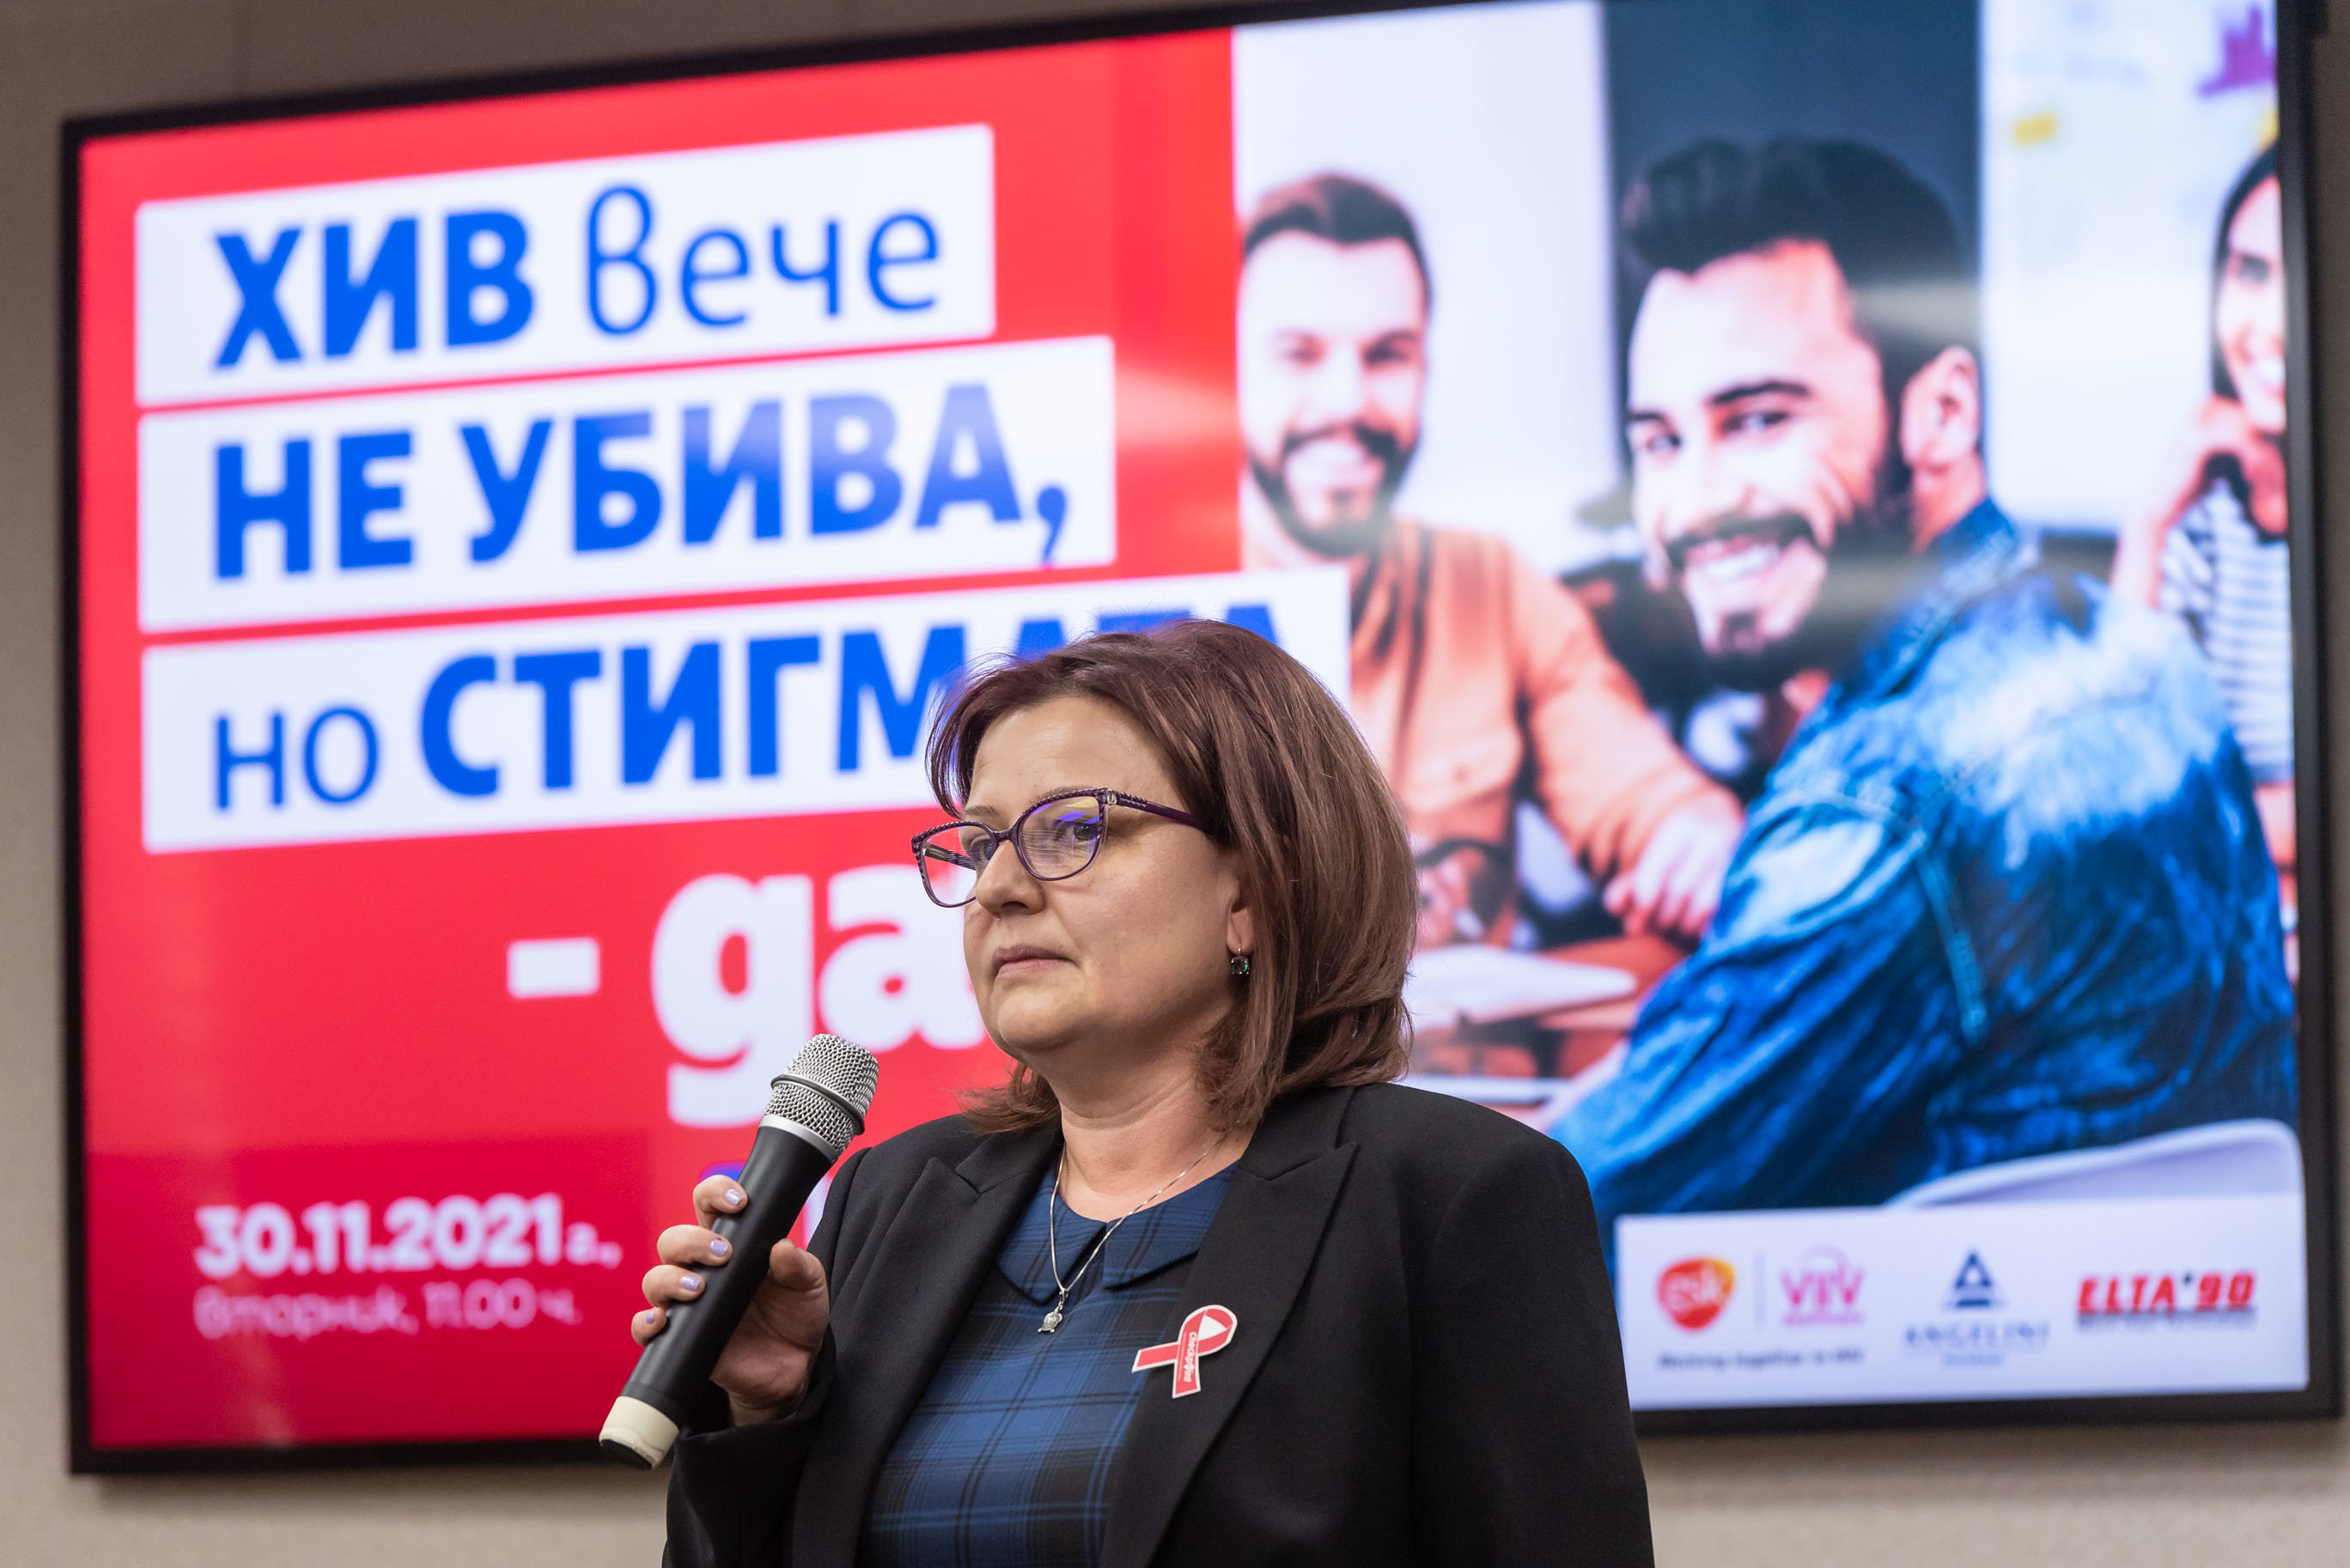 Едва 16% от българите са се изследвали за ХИВ, но